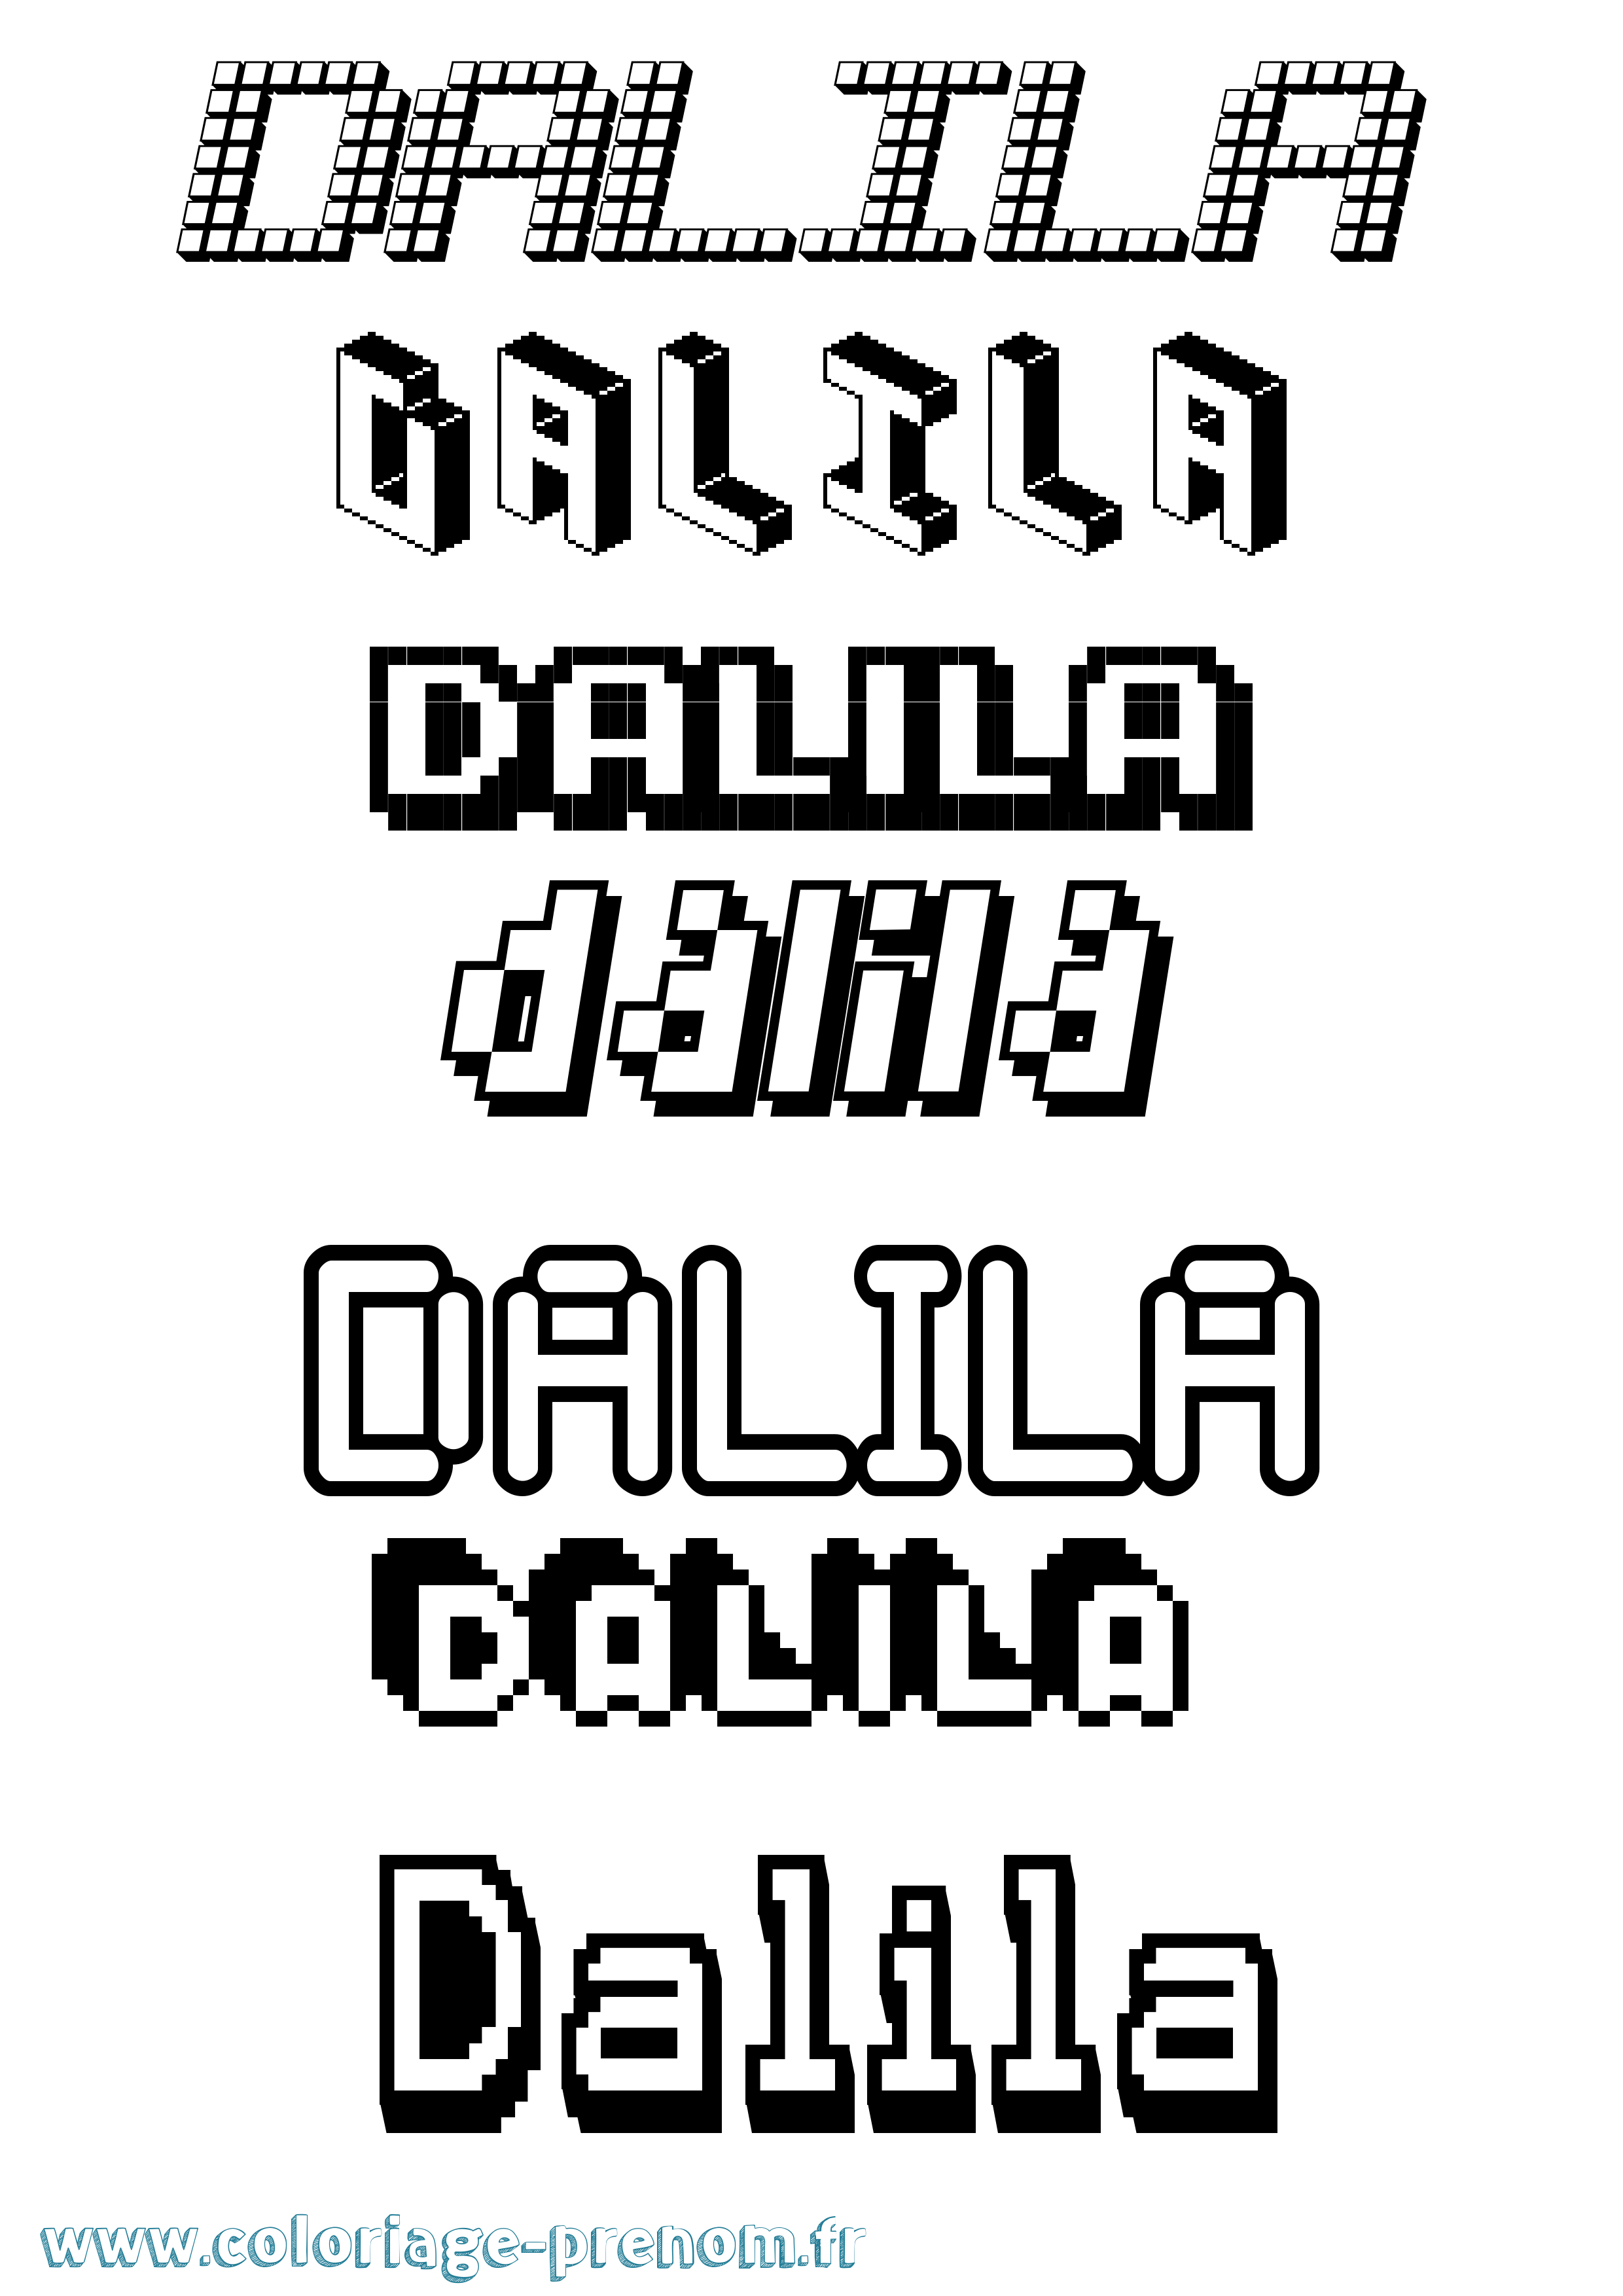 Coloriage prénom Dalila Pixel